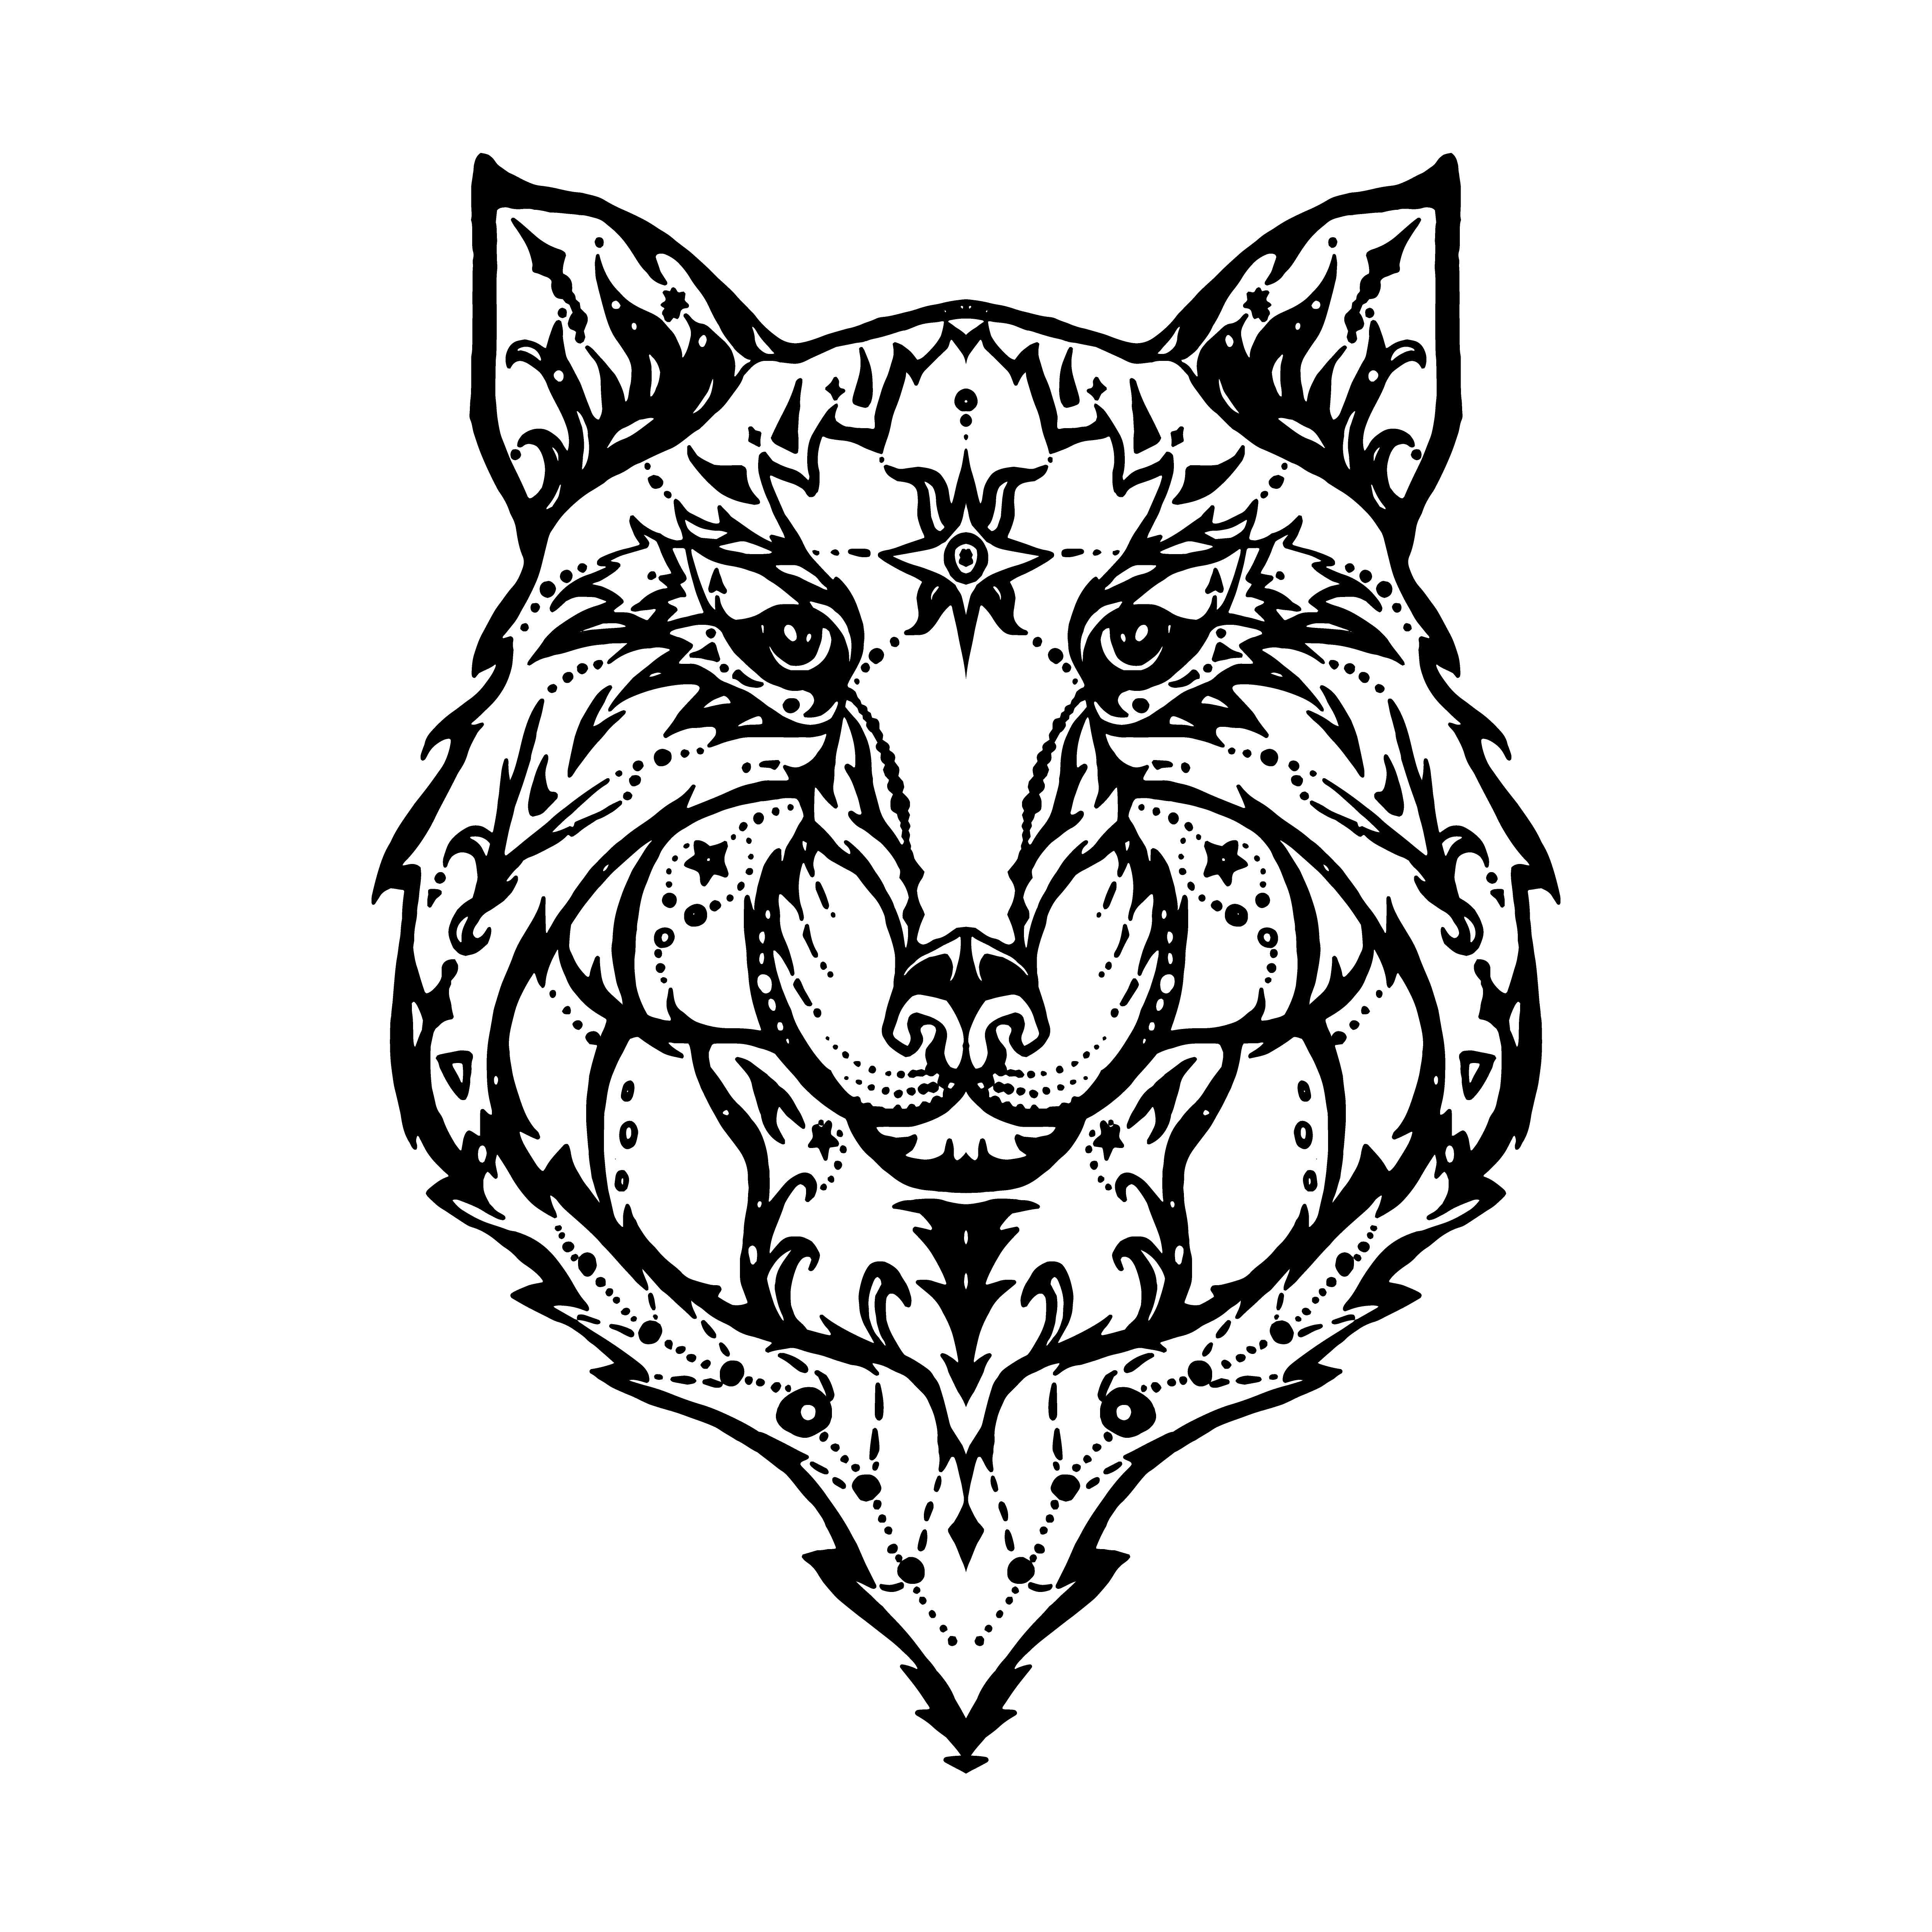 Wild wolf tattoo 2001300 Vector Art at Vecteezy